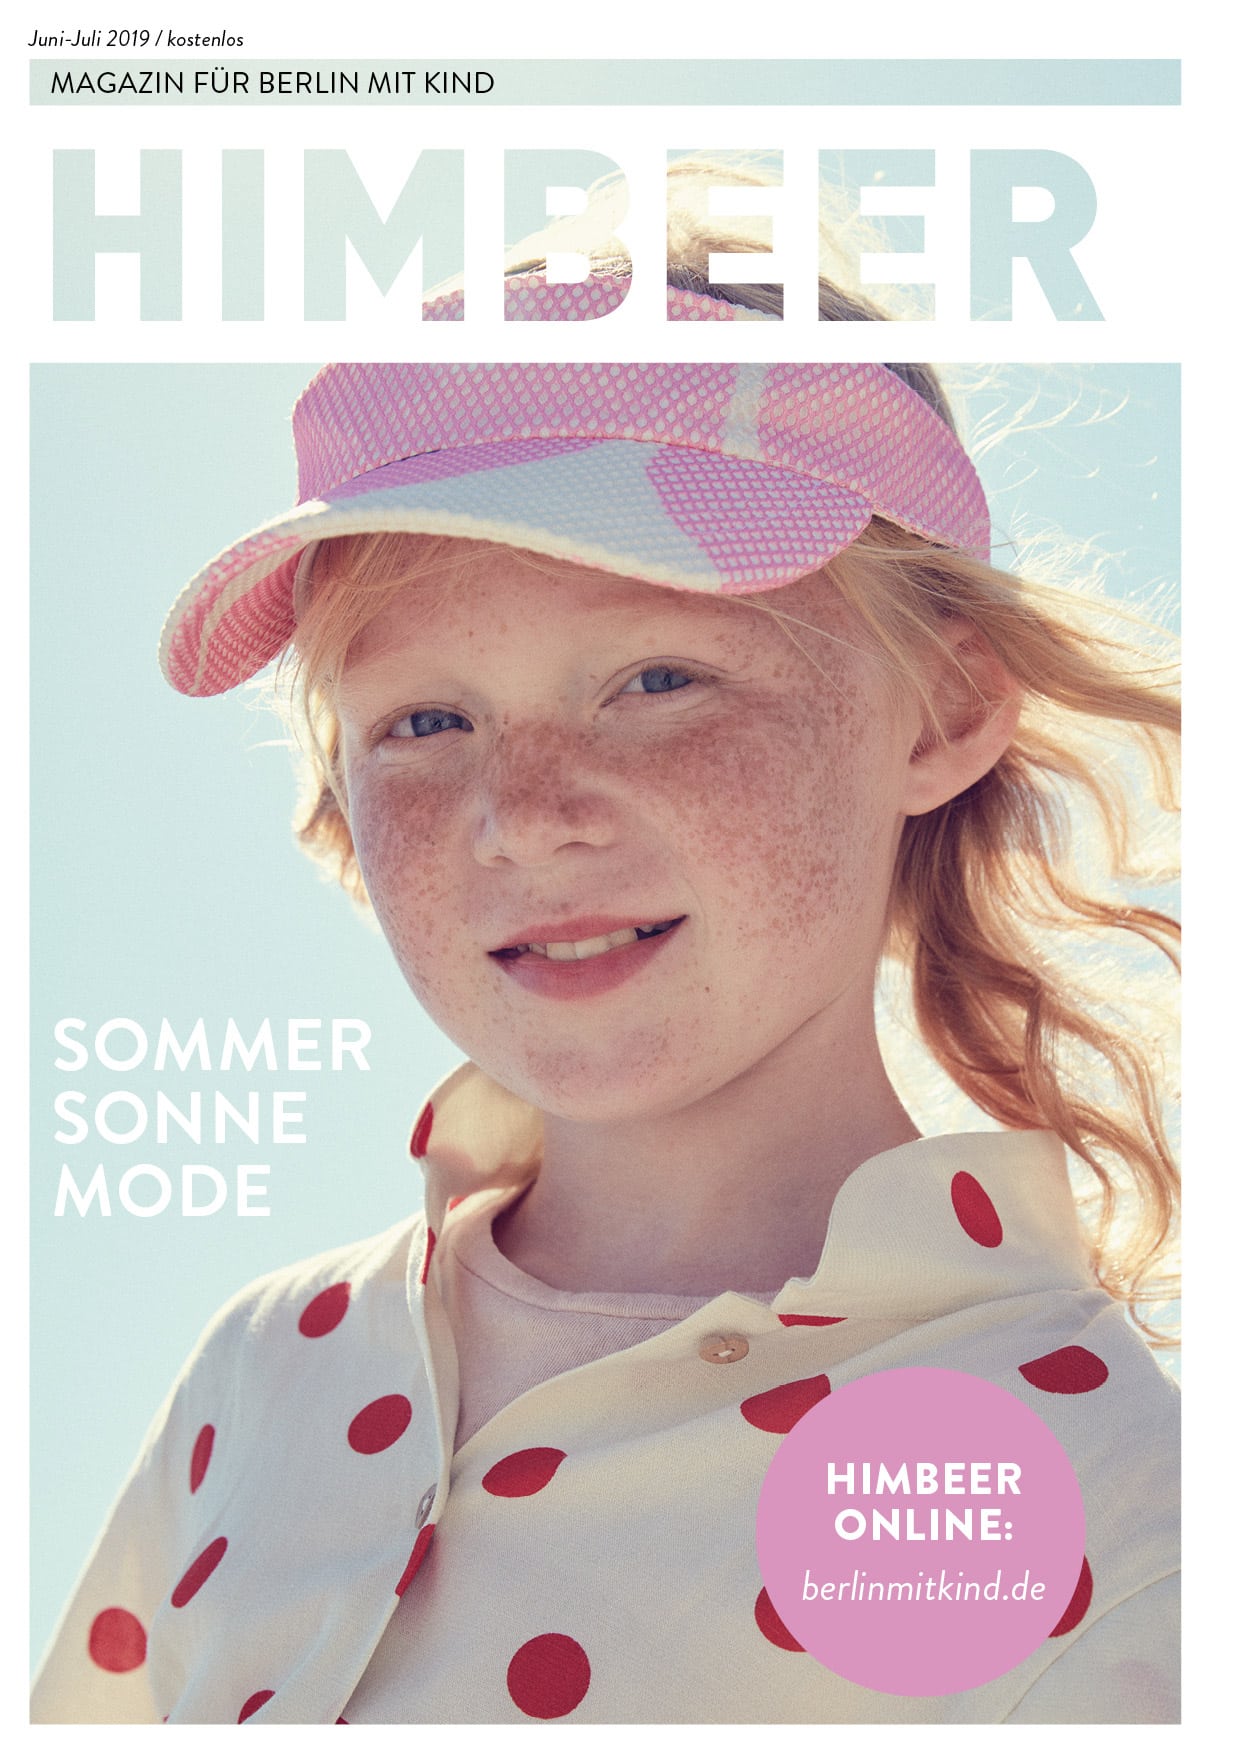 Berliner Familienmagazin: Himbeer Magazin Für Berlin Mit Kind Juni-Juli 2019 // Himbeer